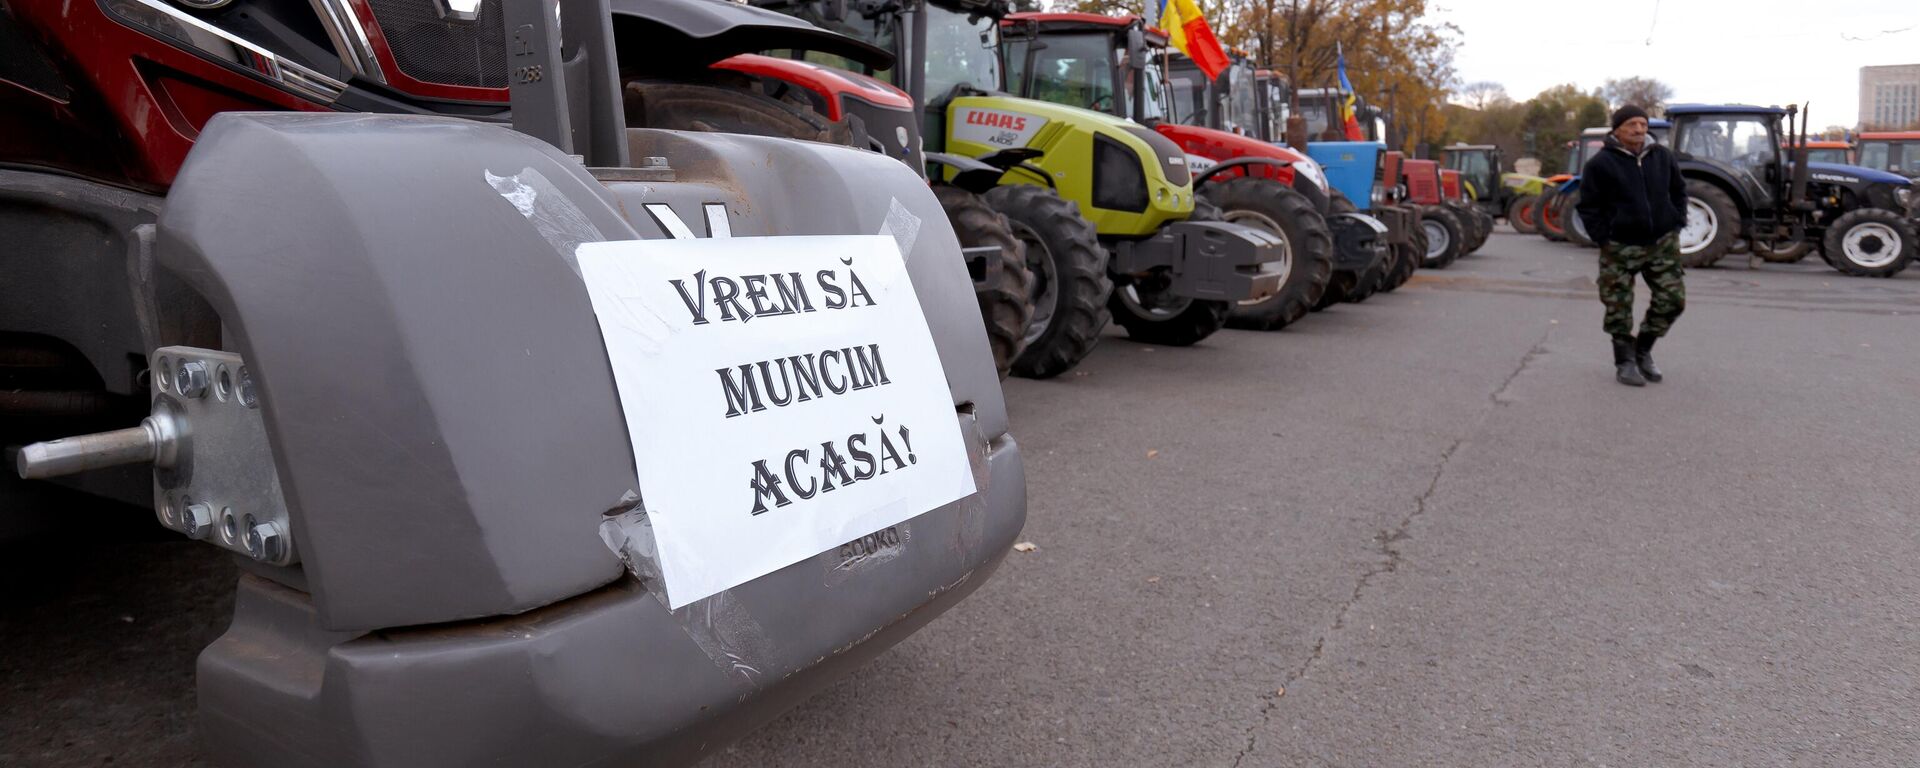 Протест фермеров в Молдове, 24.11.2023 - Sputnik Молдова, 1920, 25.11.2023